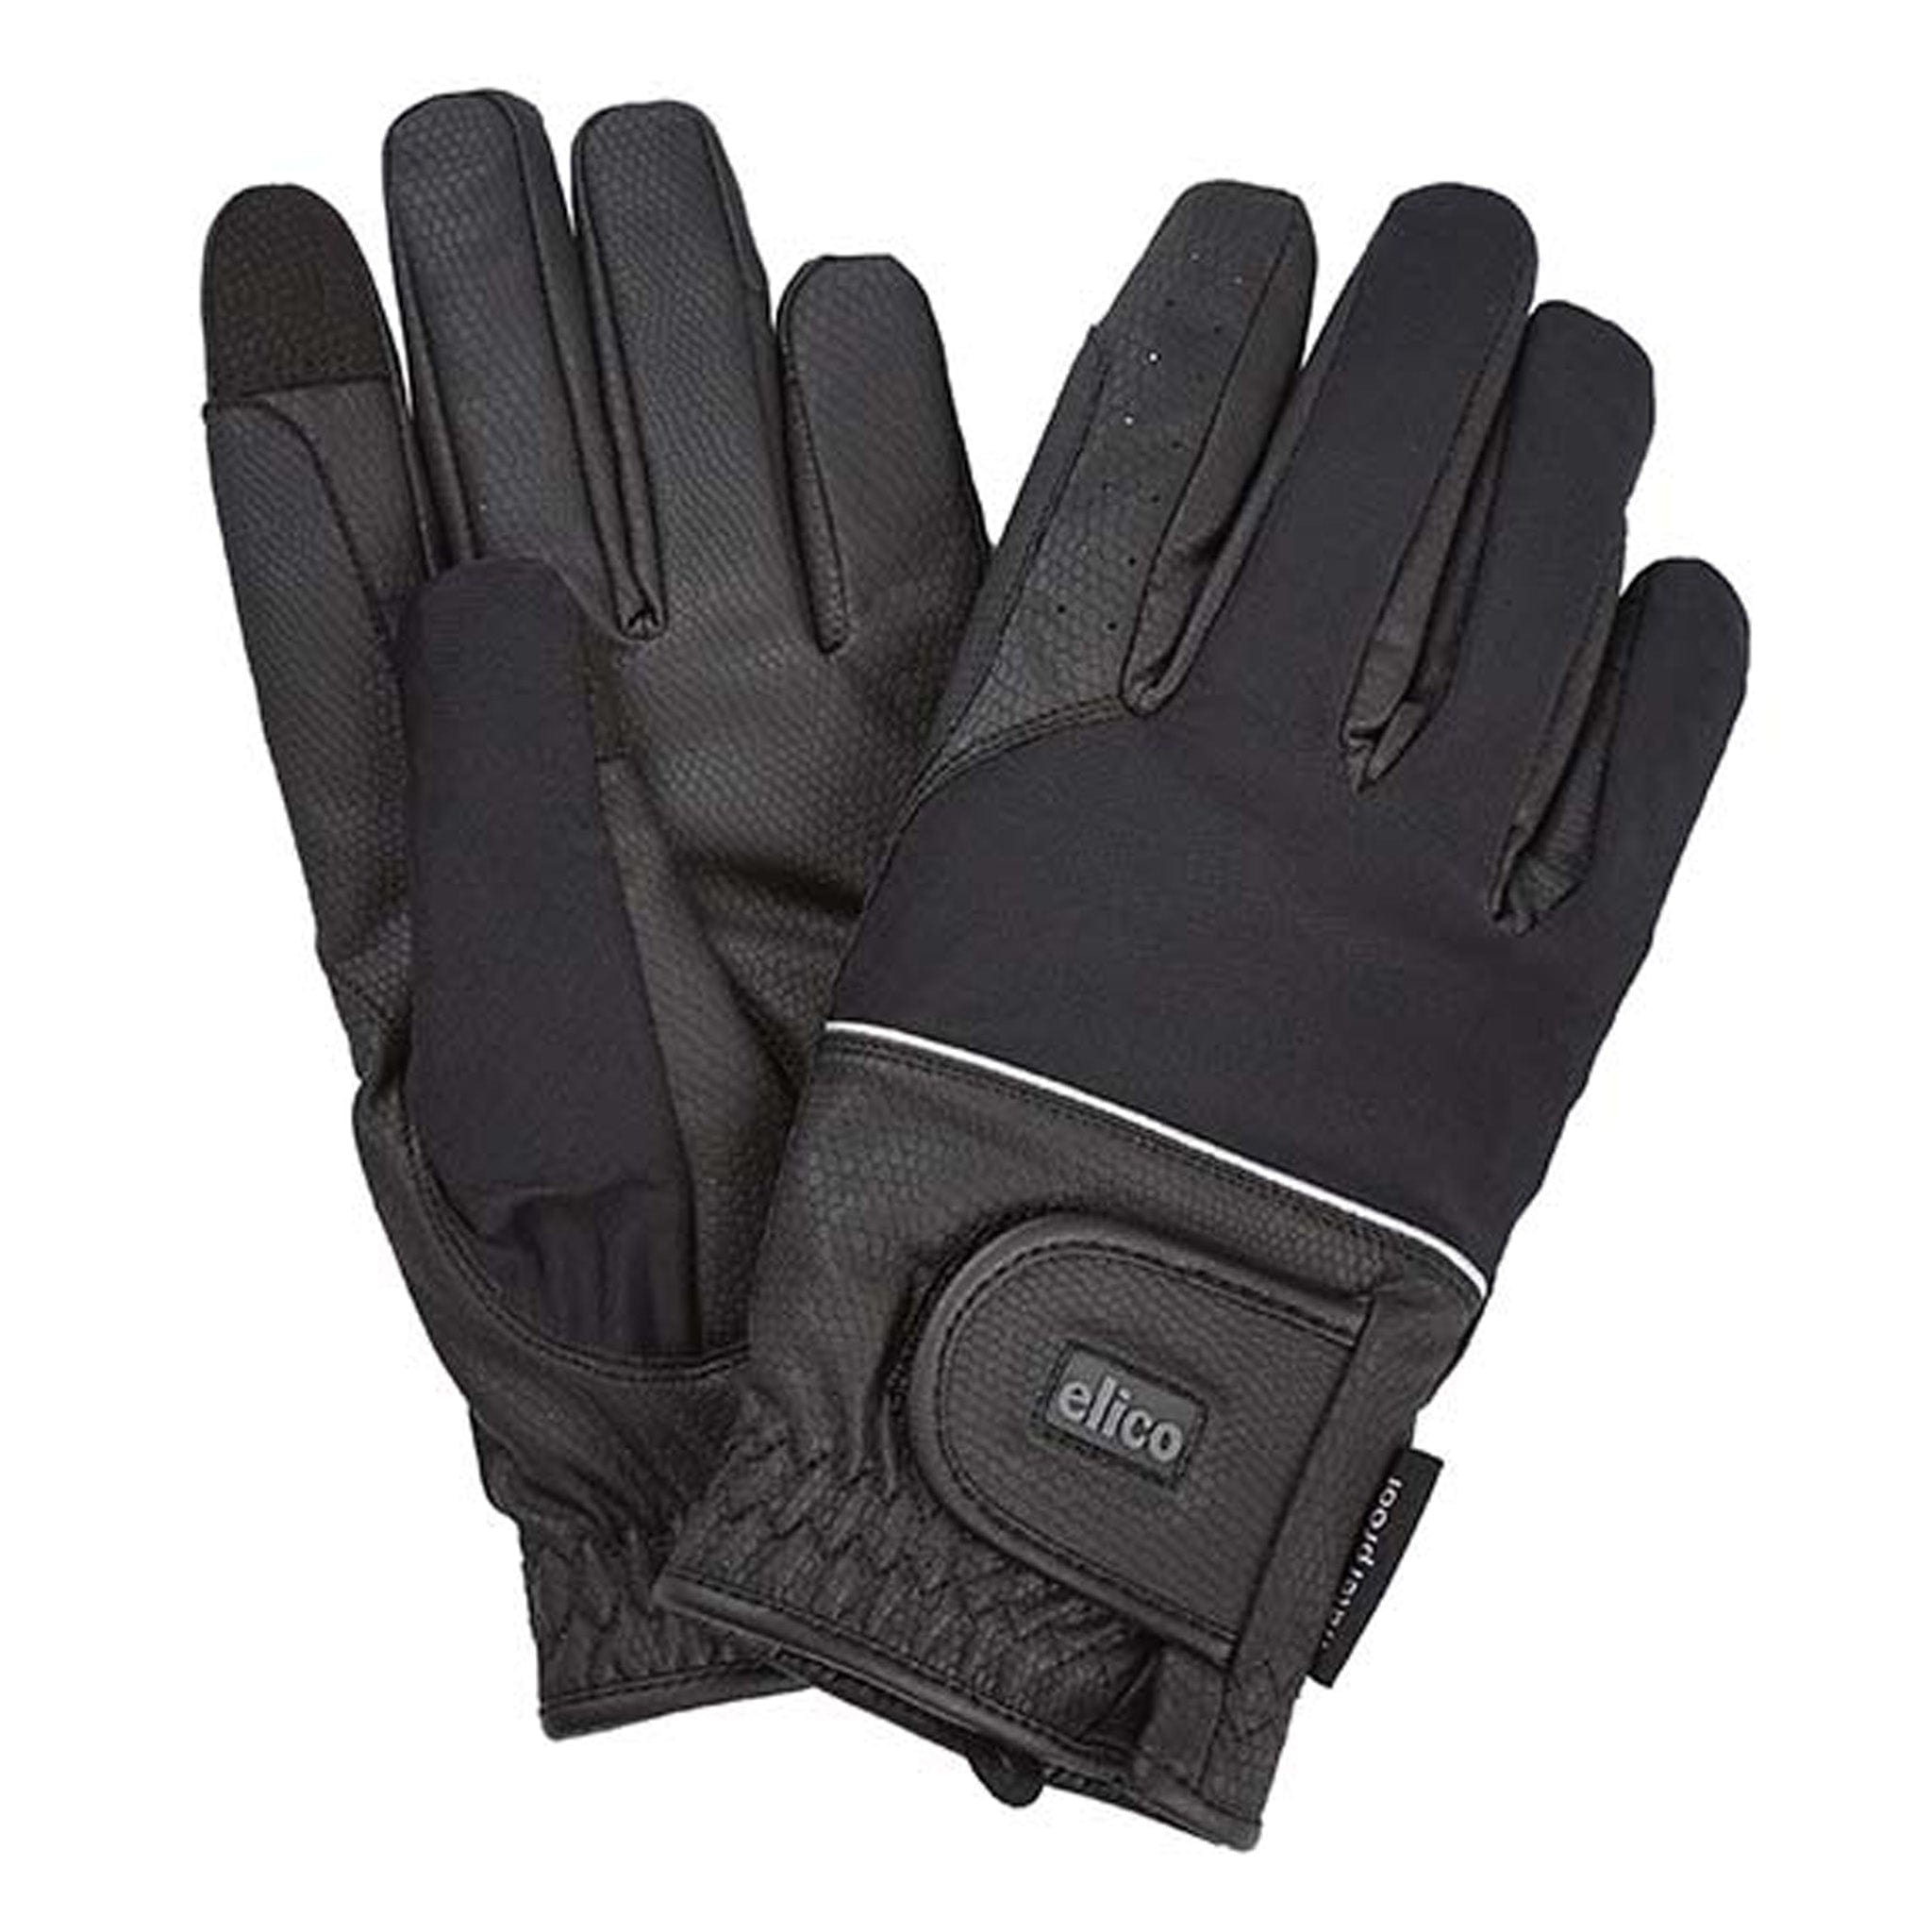 Elico Longford Waterproof Gloves